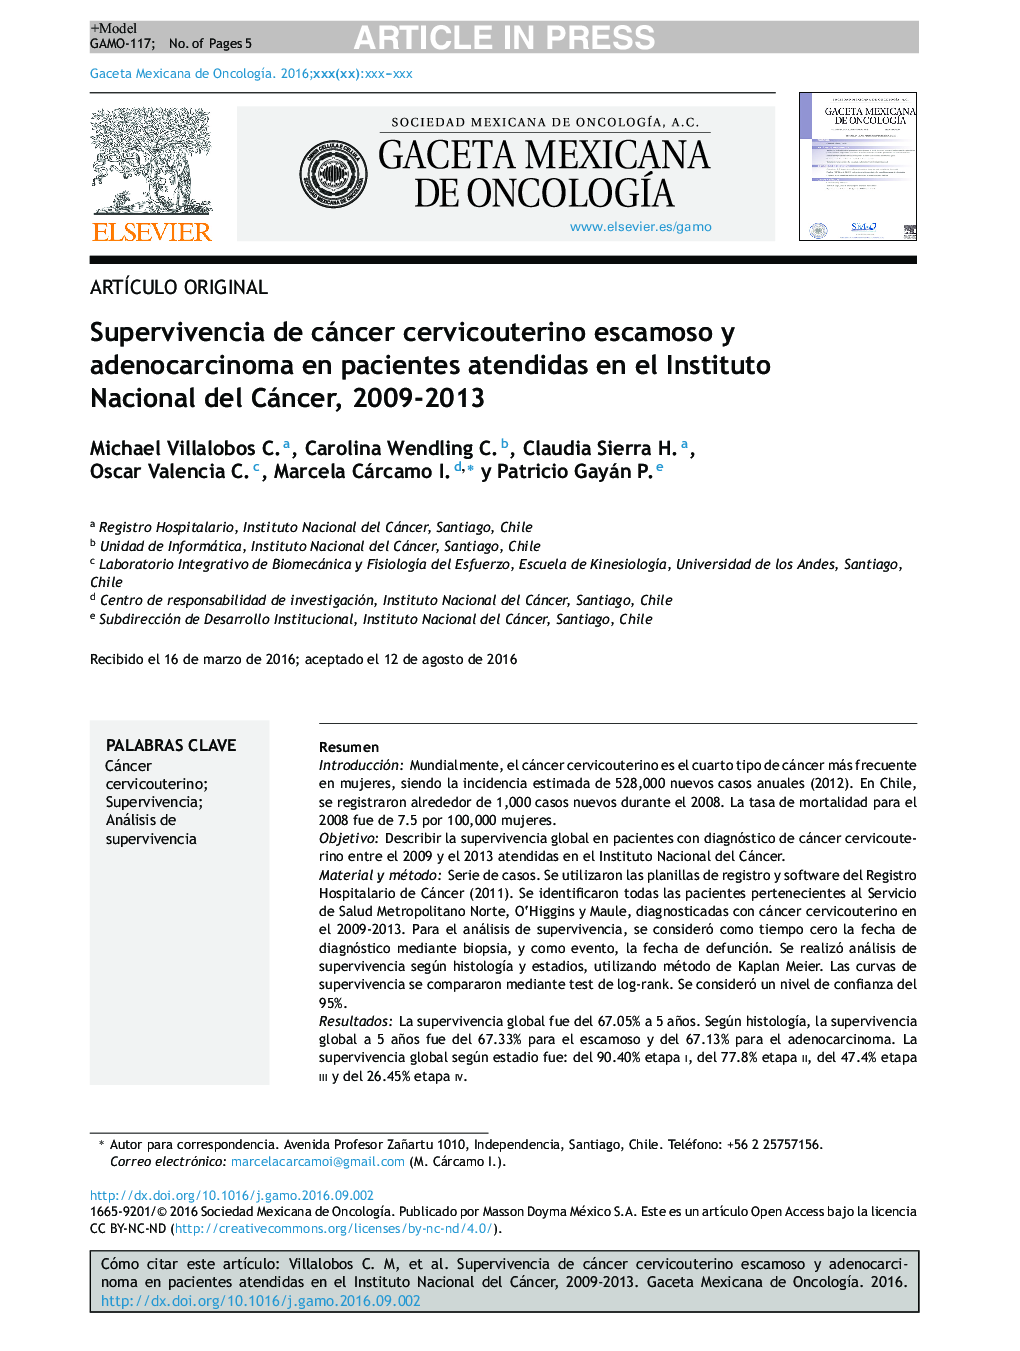 Supervivencia de cáncer cervicouterino escamoso y adenocarcinoma en pacientes atendidas en el Instituto Nacional del Cáncer, 2009-2013